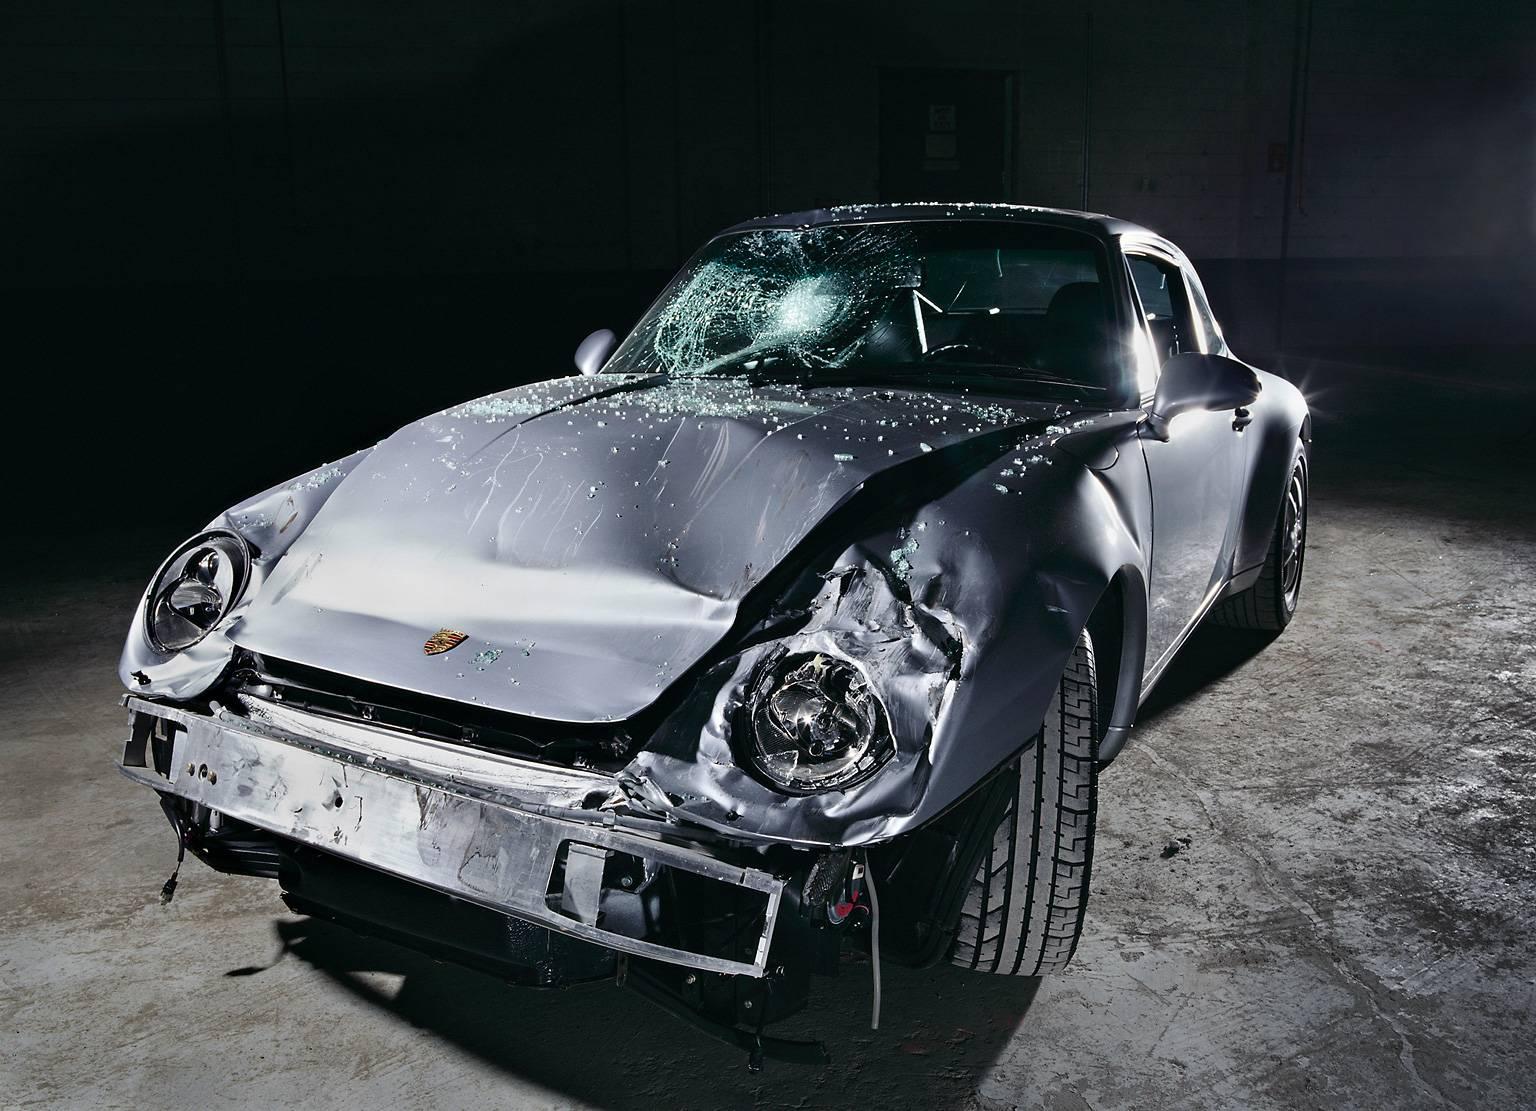 INE-ONE-ONE-ONE (Porsche 911) - photographie en studio à grande échelle d'une automobile cassée